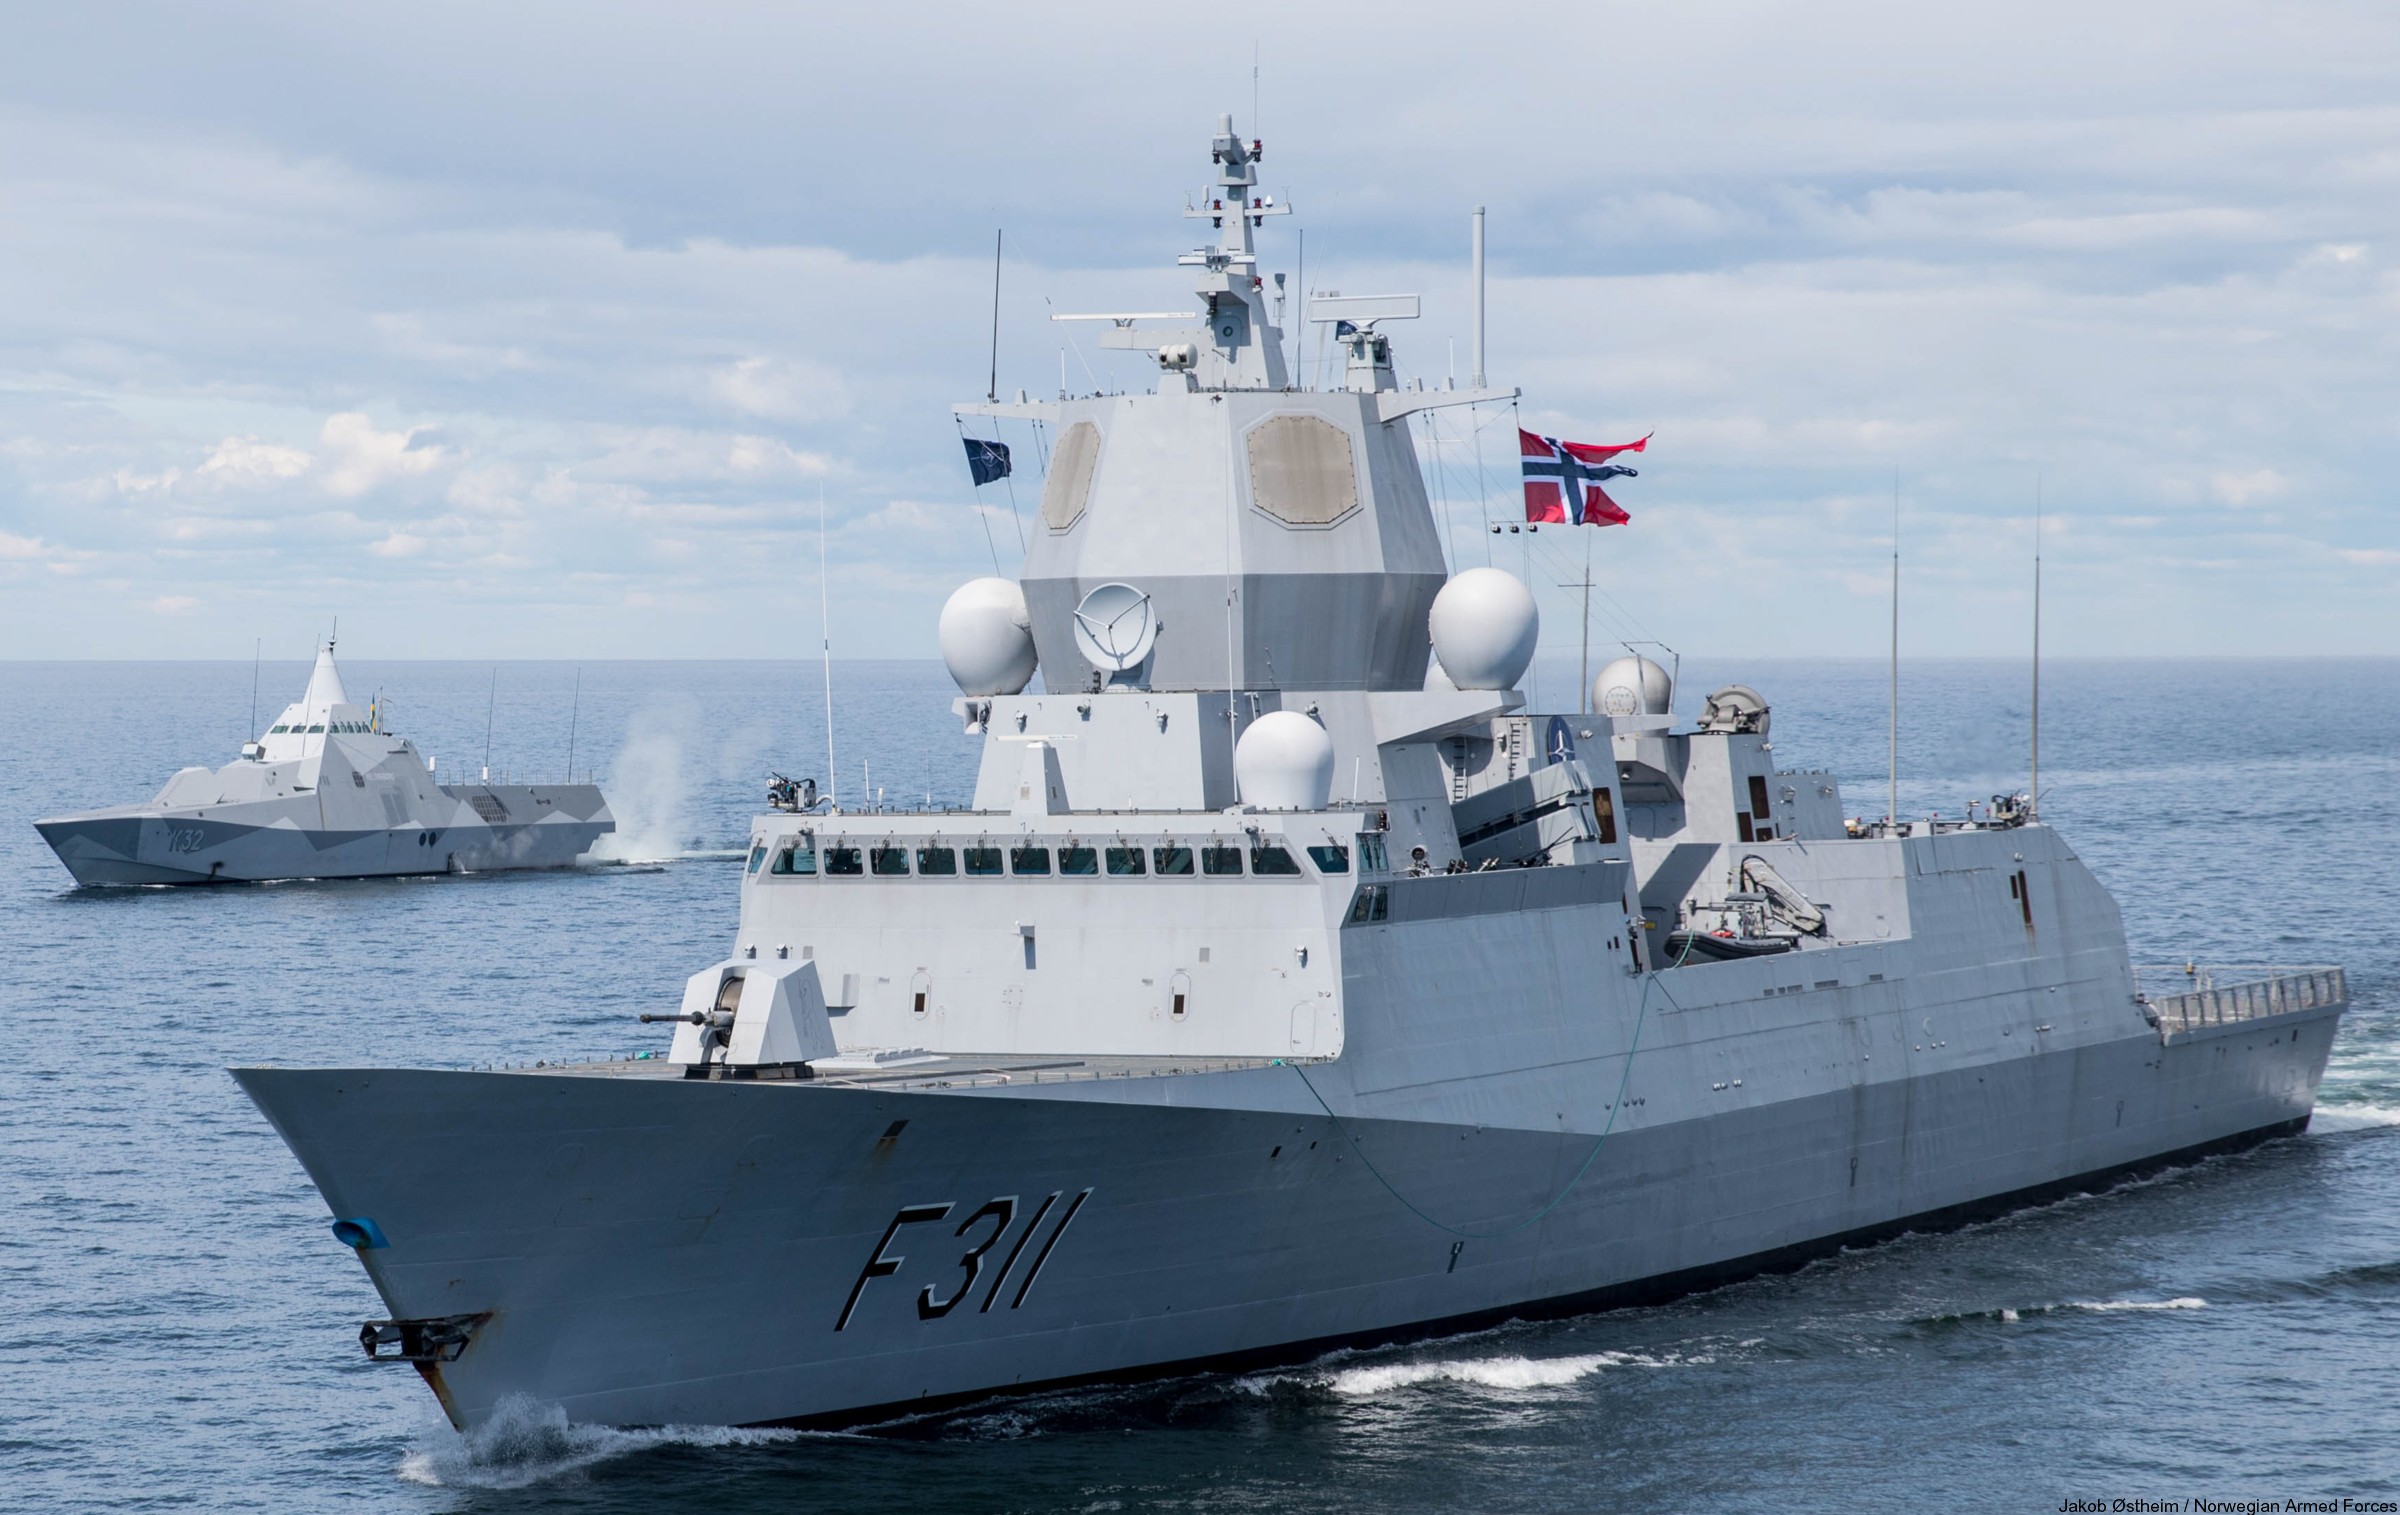 f-311 hnoms roald amundsen knm nansen class frigate royal norwegian navy sjoforsvaret 33